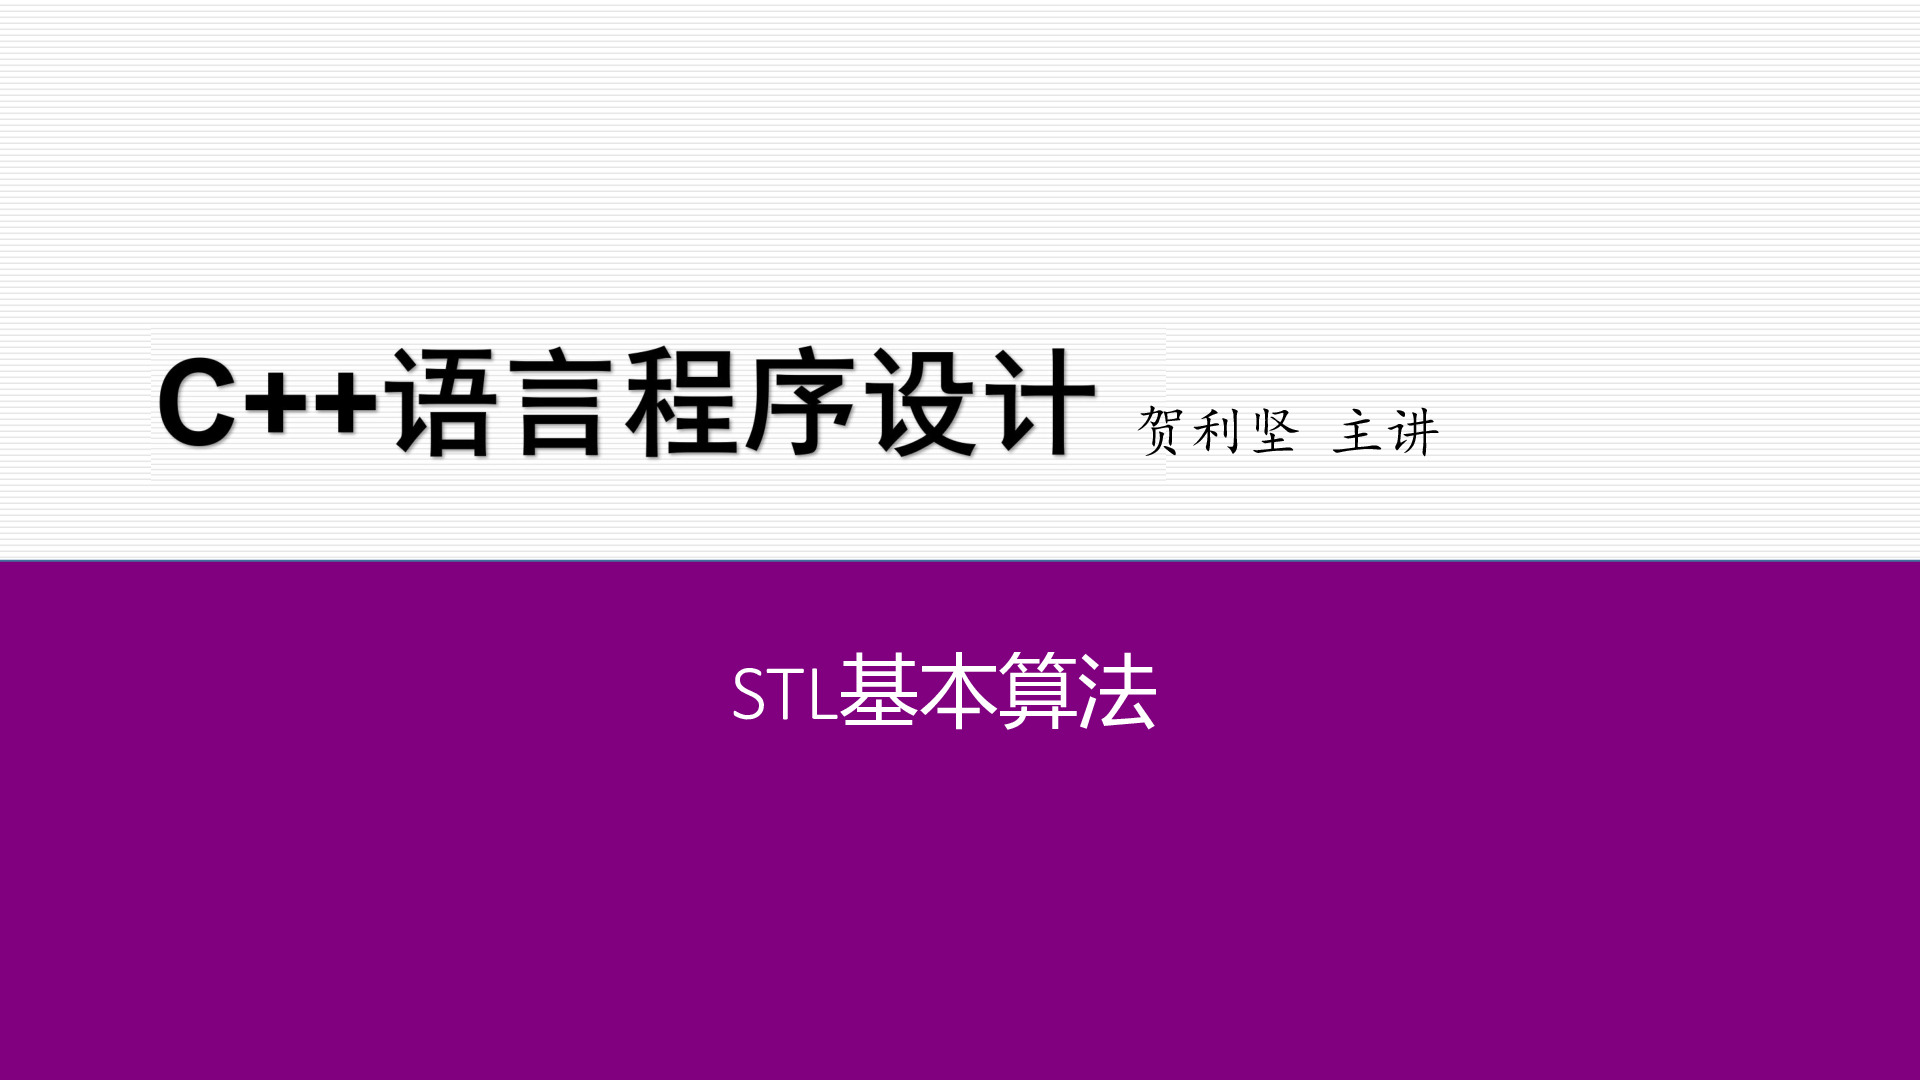 标准模板库STL编程初步【82466】STL基本算法